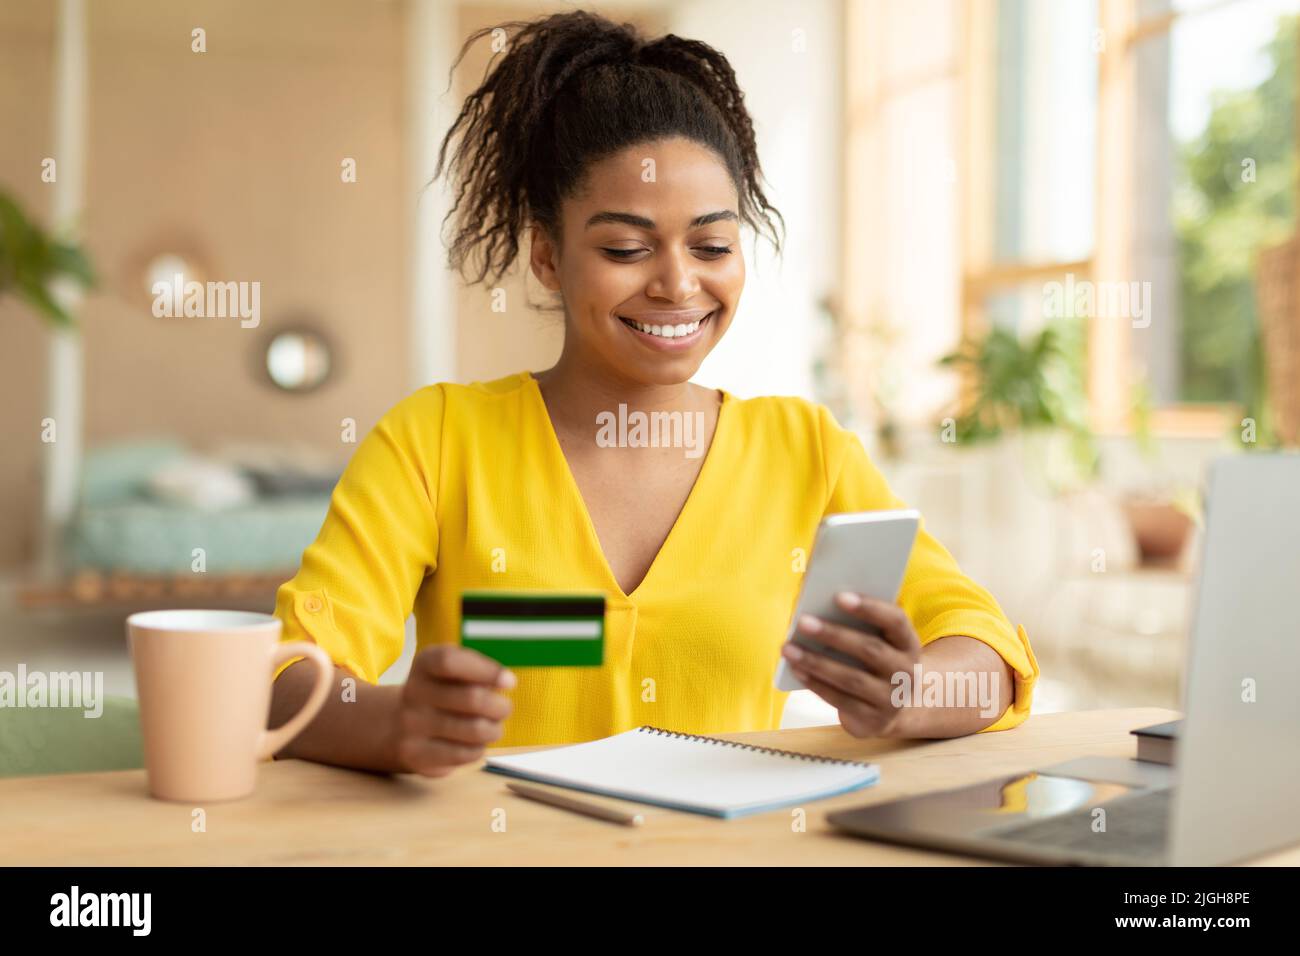 Bonne dame noire achetant des choses en ligne, en utilisant un smartphone et une carte de crédit, magasiner sur Internet tout en étant assise à la maison Banque D'Images